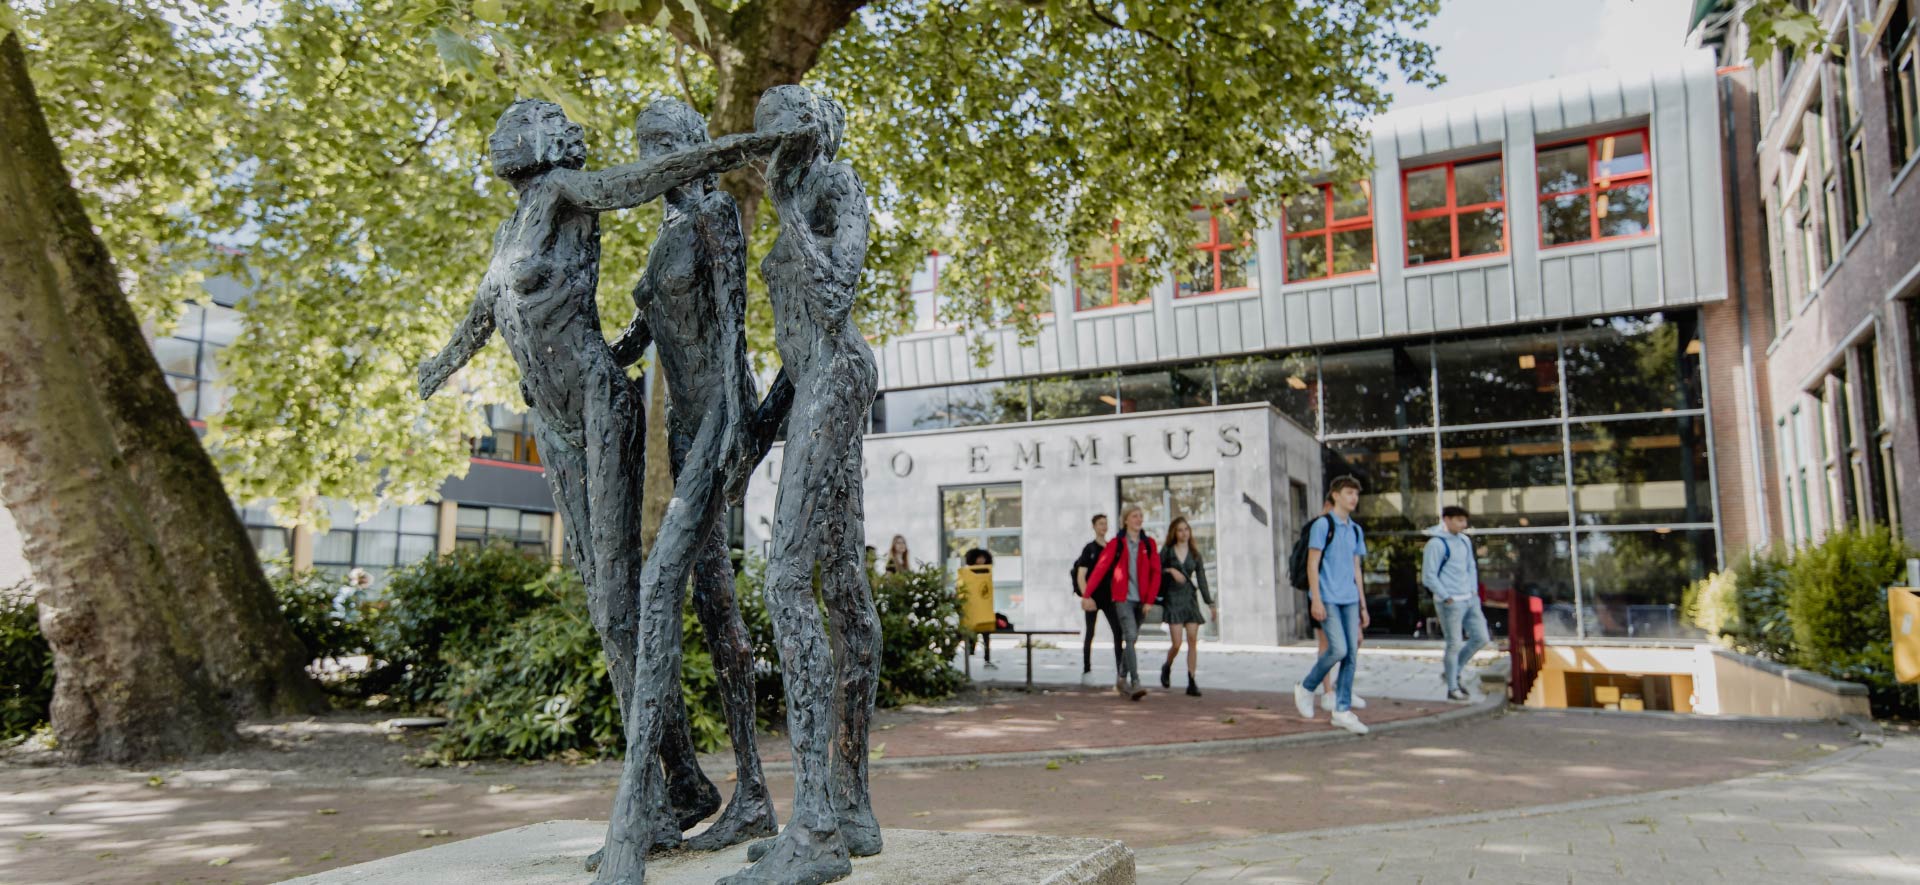 https://www.ubboemmius.nl/wp-content/uploads/2022/11/ubbo-stationslaan-gebouw-standbeeld.jpg